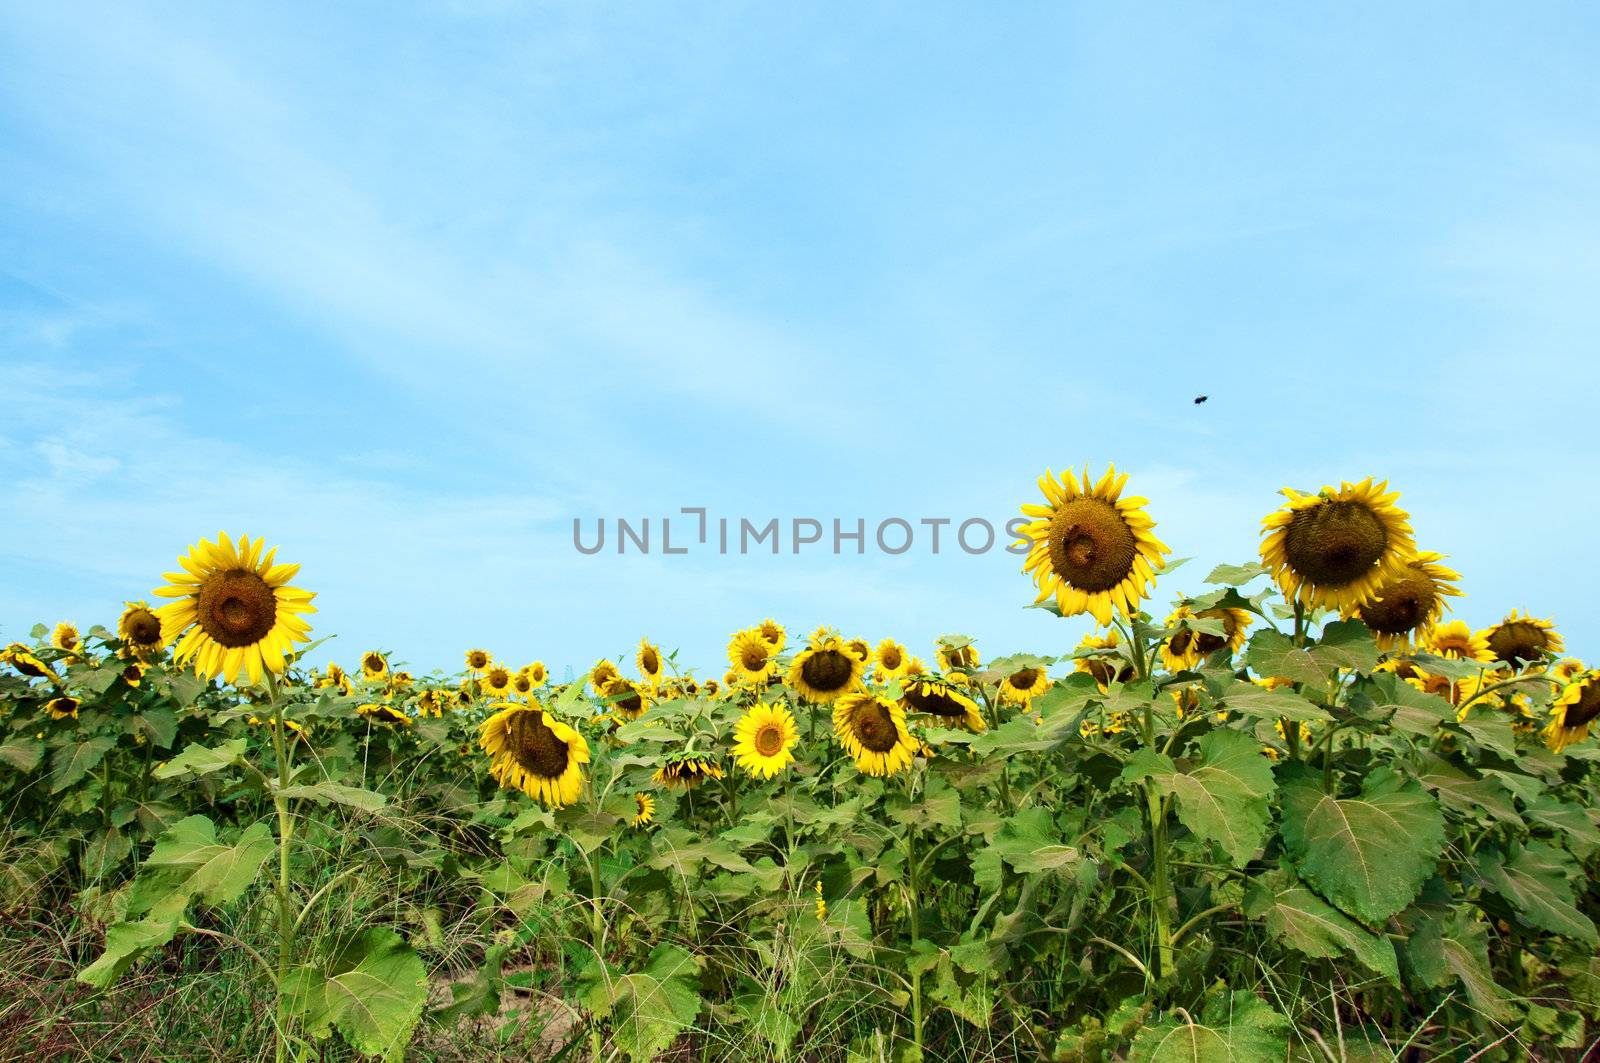 Sunflowers in Field by dehooks